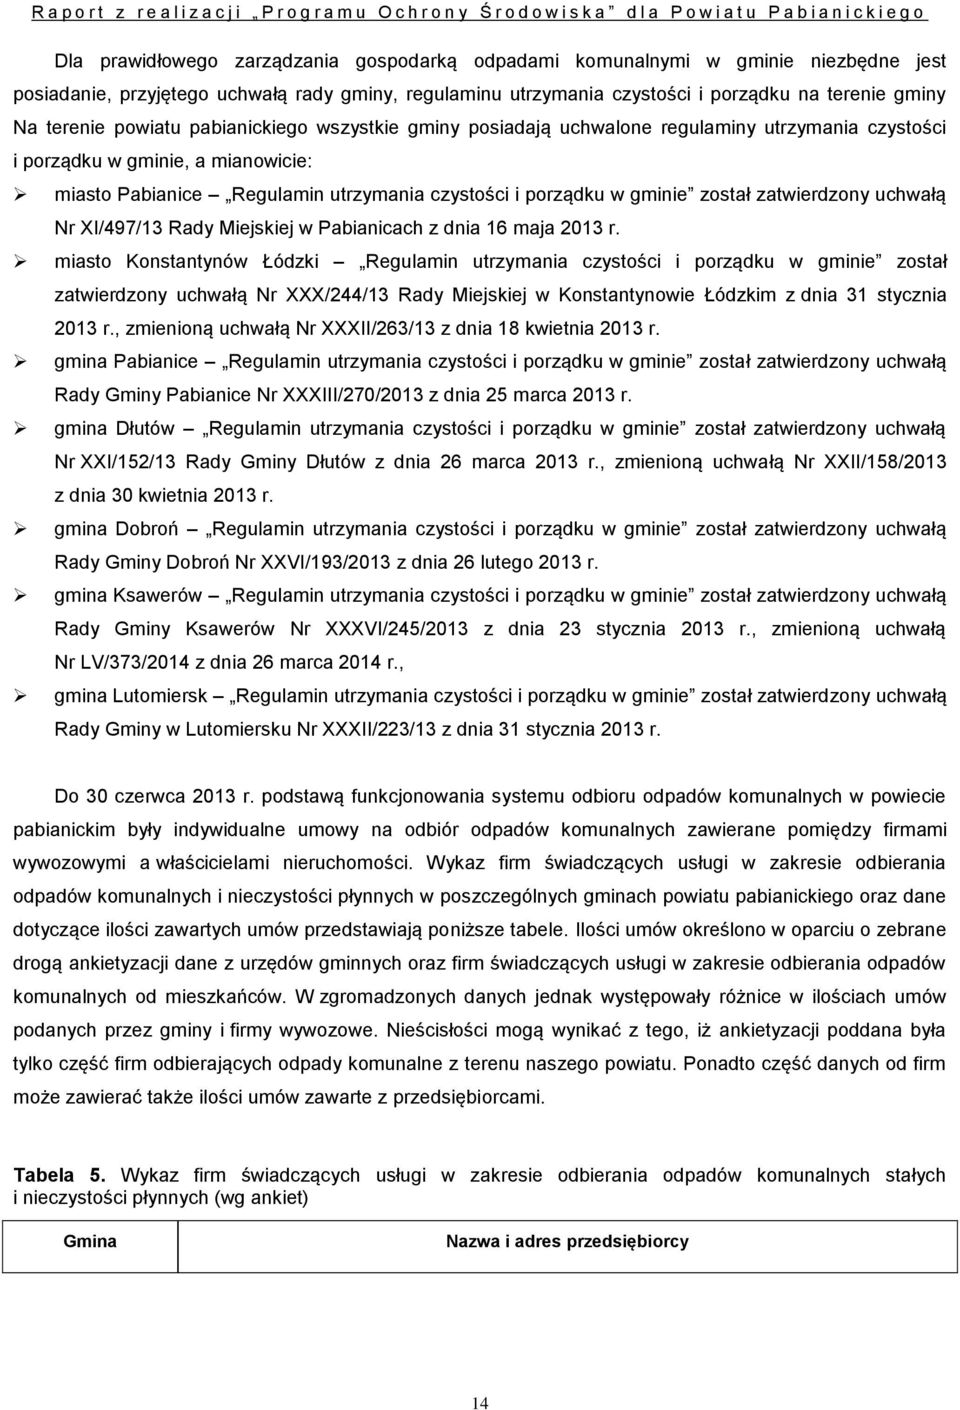 zatwierdzony uchwałą Nr XI/497/13 Rady Miejskiej w Pabianicach z dnia 16 maja 2013 r.